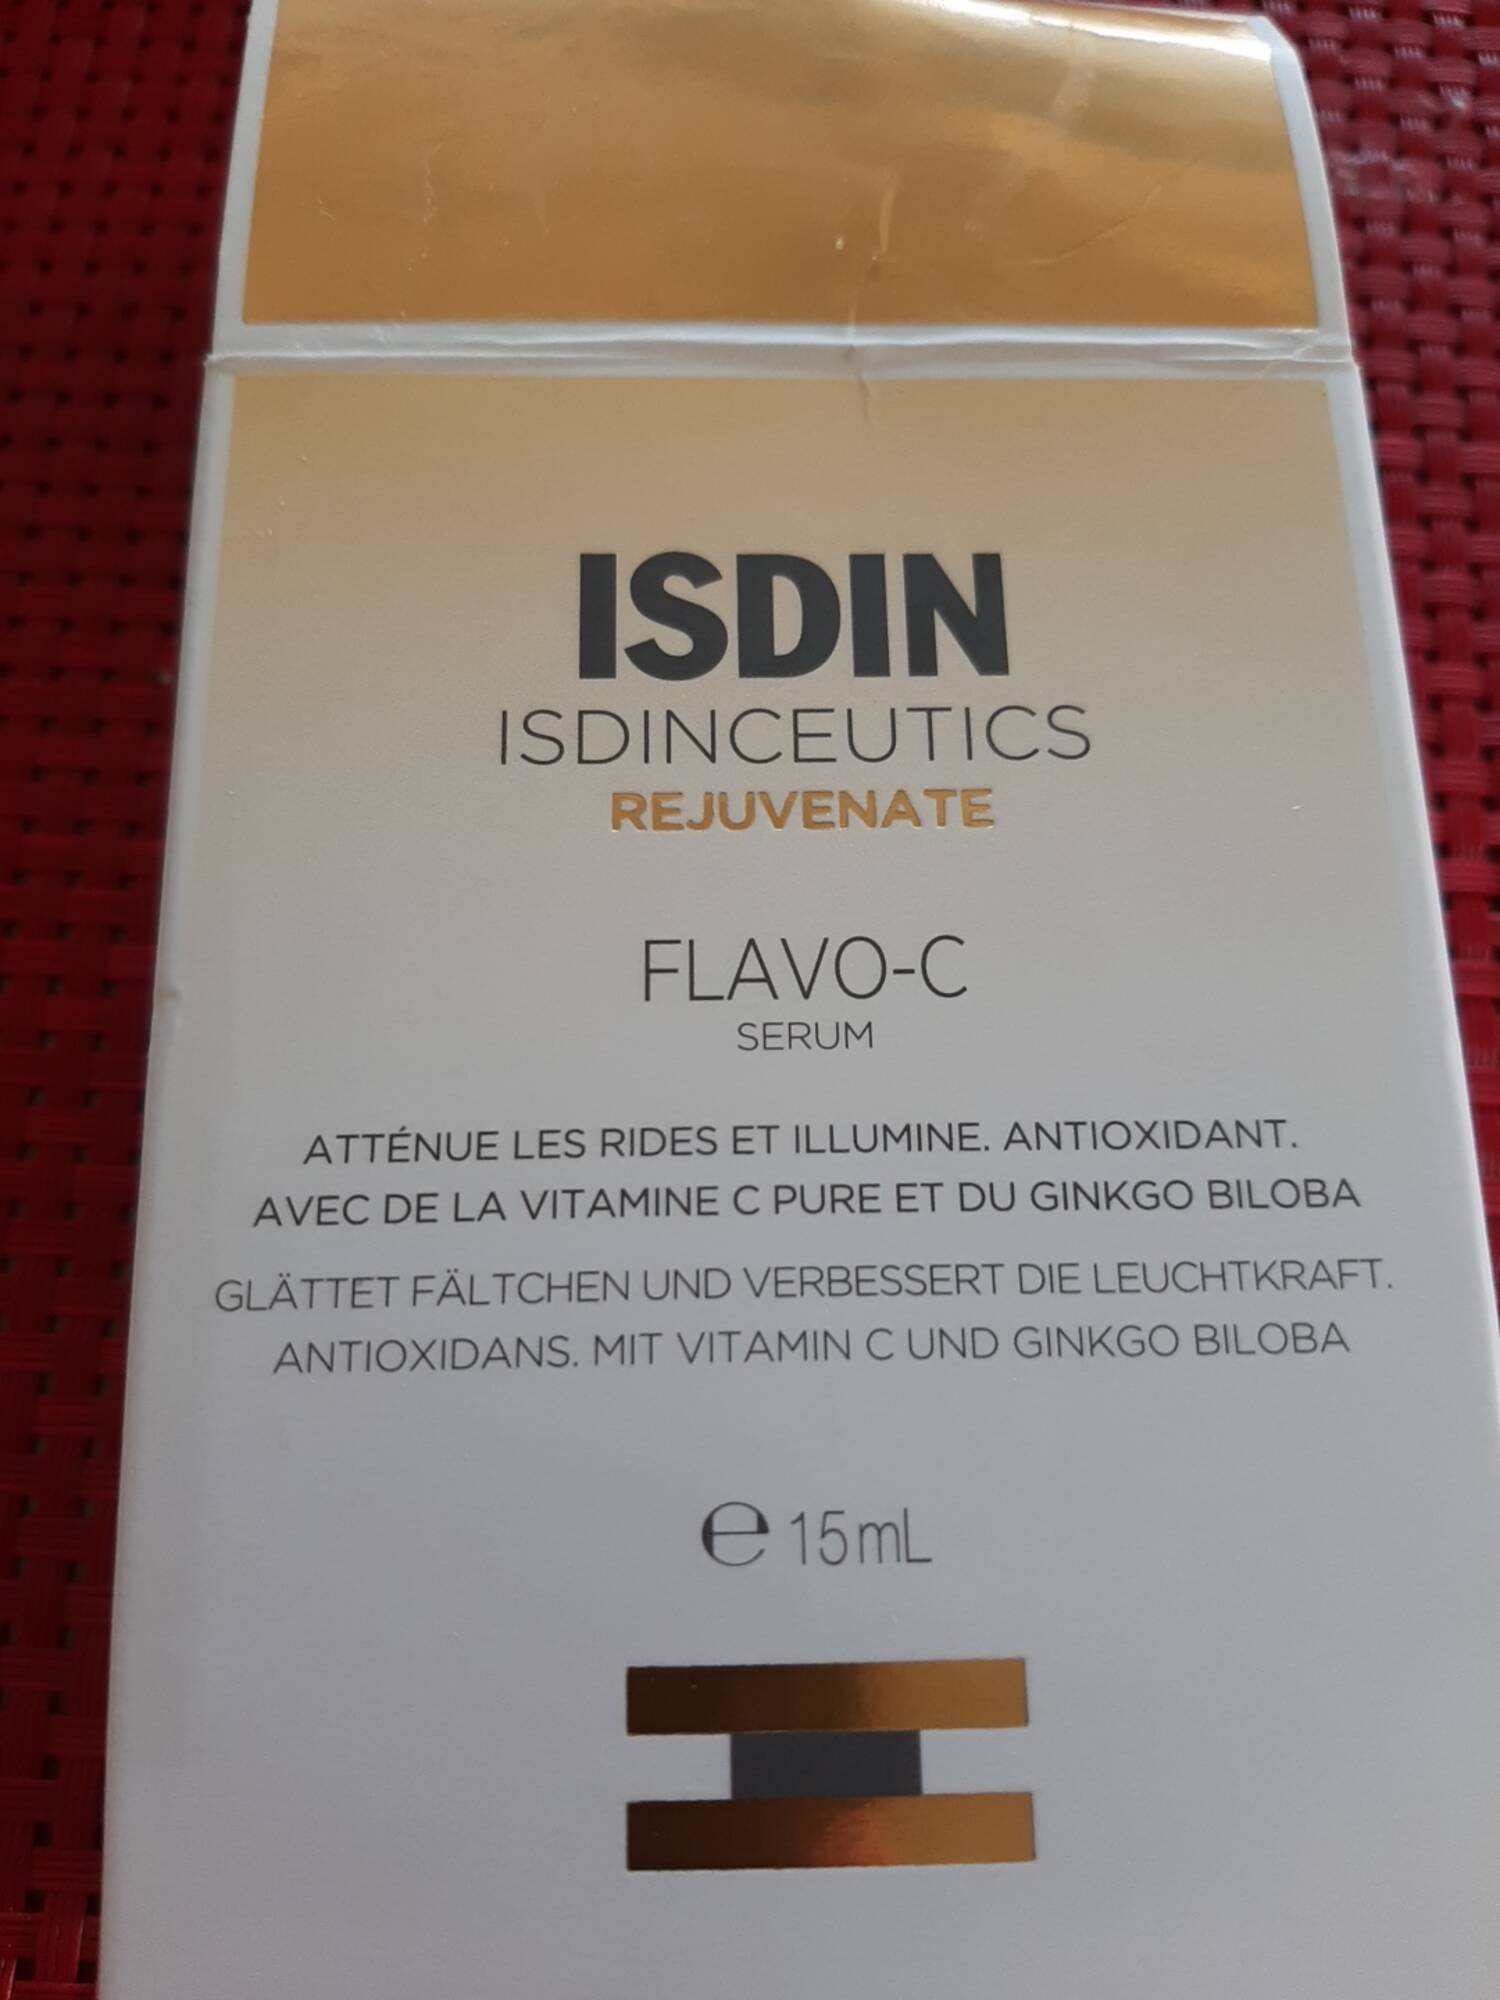 ISDIN - Isdinceutics rejuvenate Flavo-C sérum 